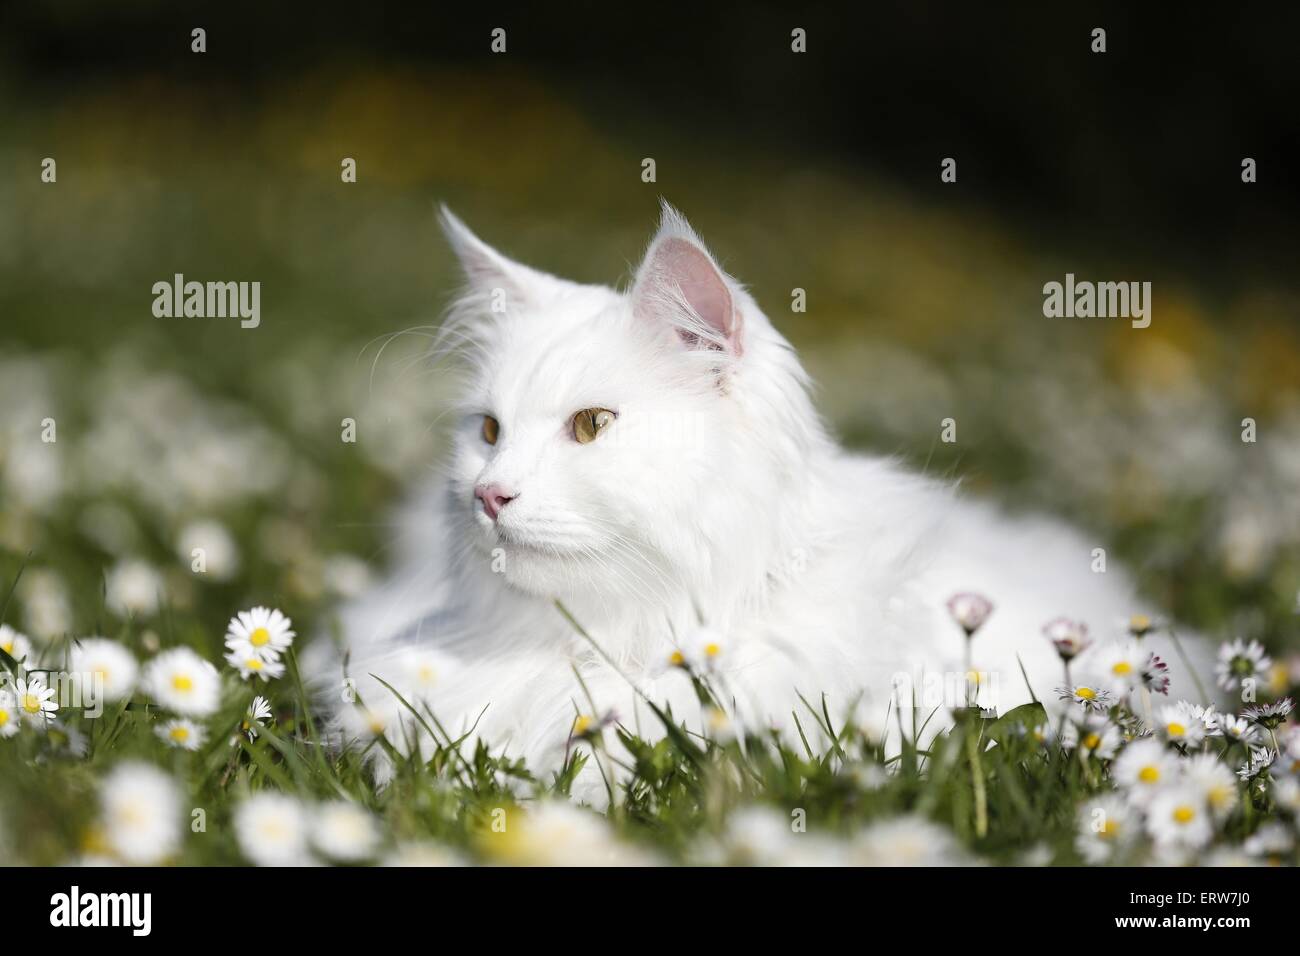 Siberian Cat lying in flower meadow Stock Photo